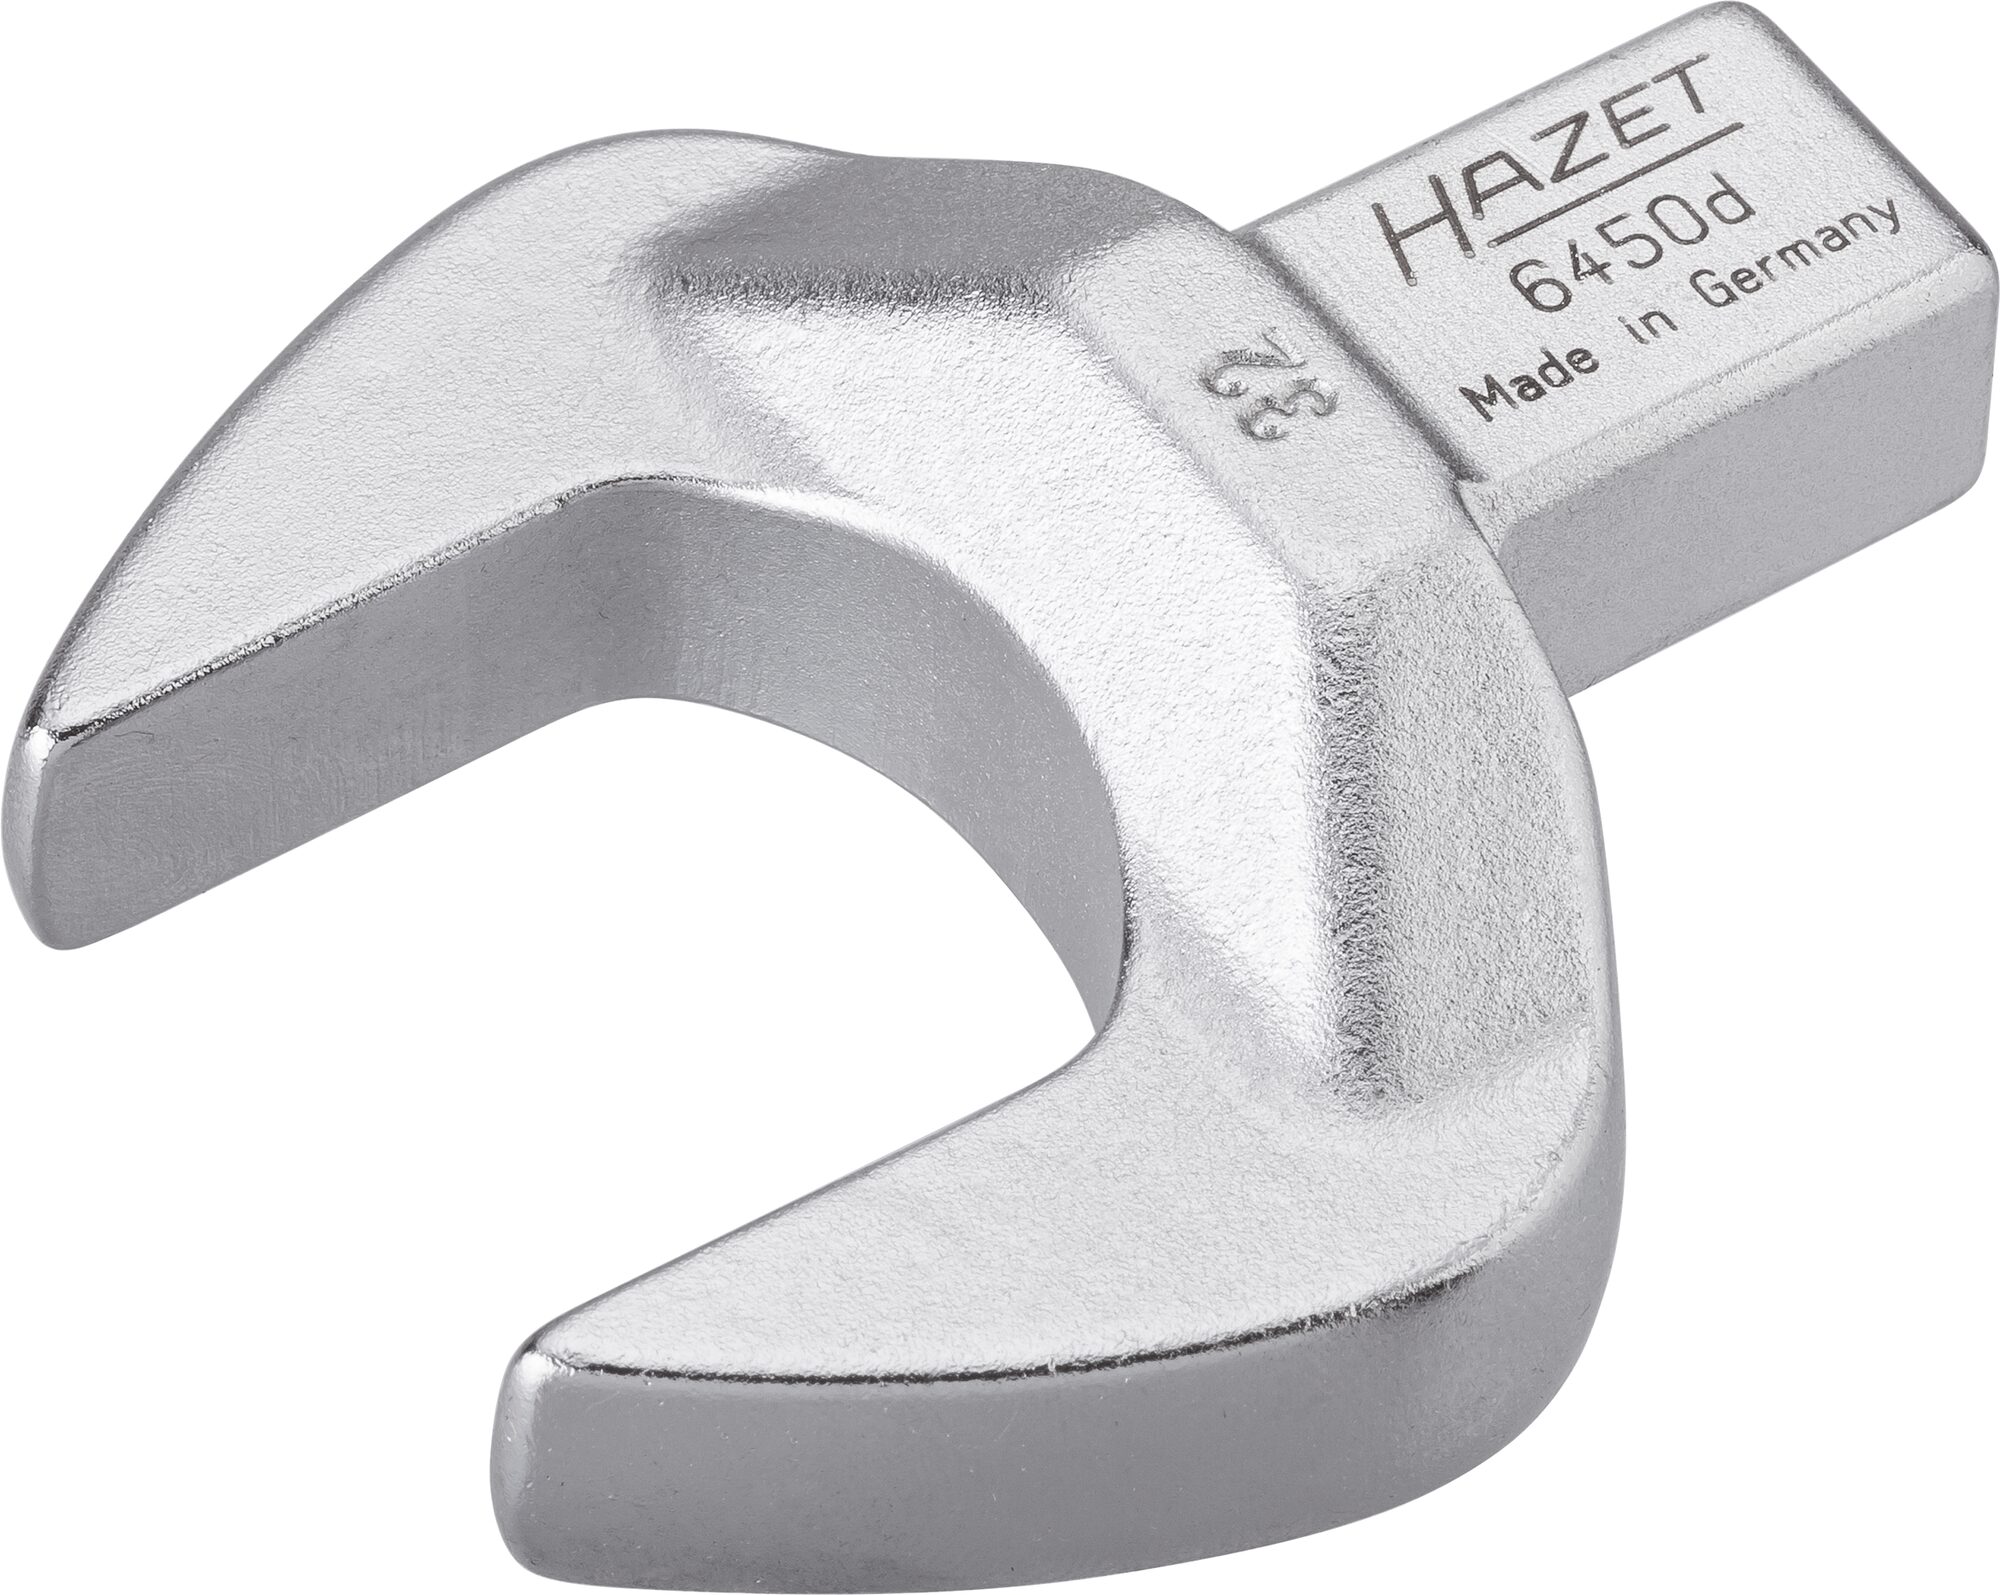 HAZET Einsteck-Maulschlüssel 6450D-32 · Einsteck-Vierkant 14 x 18 mm · Außen Sechskant Profil · 32 mm